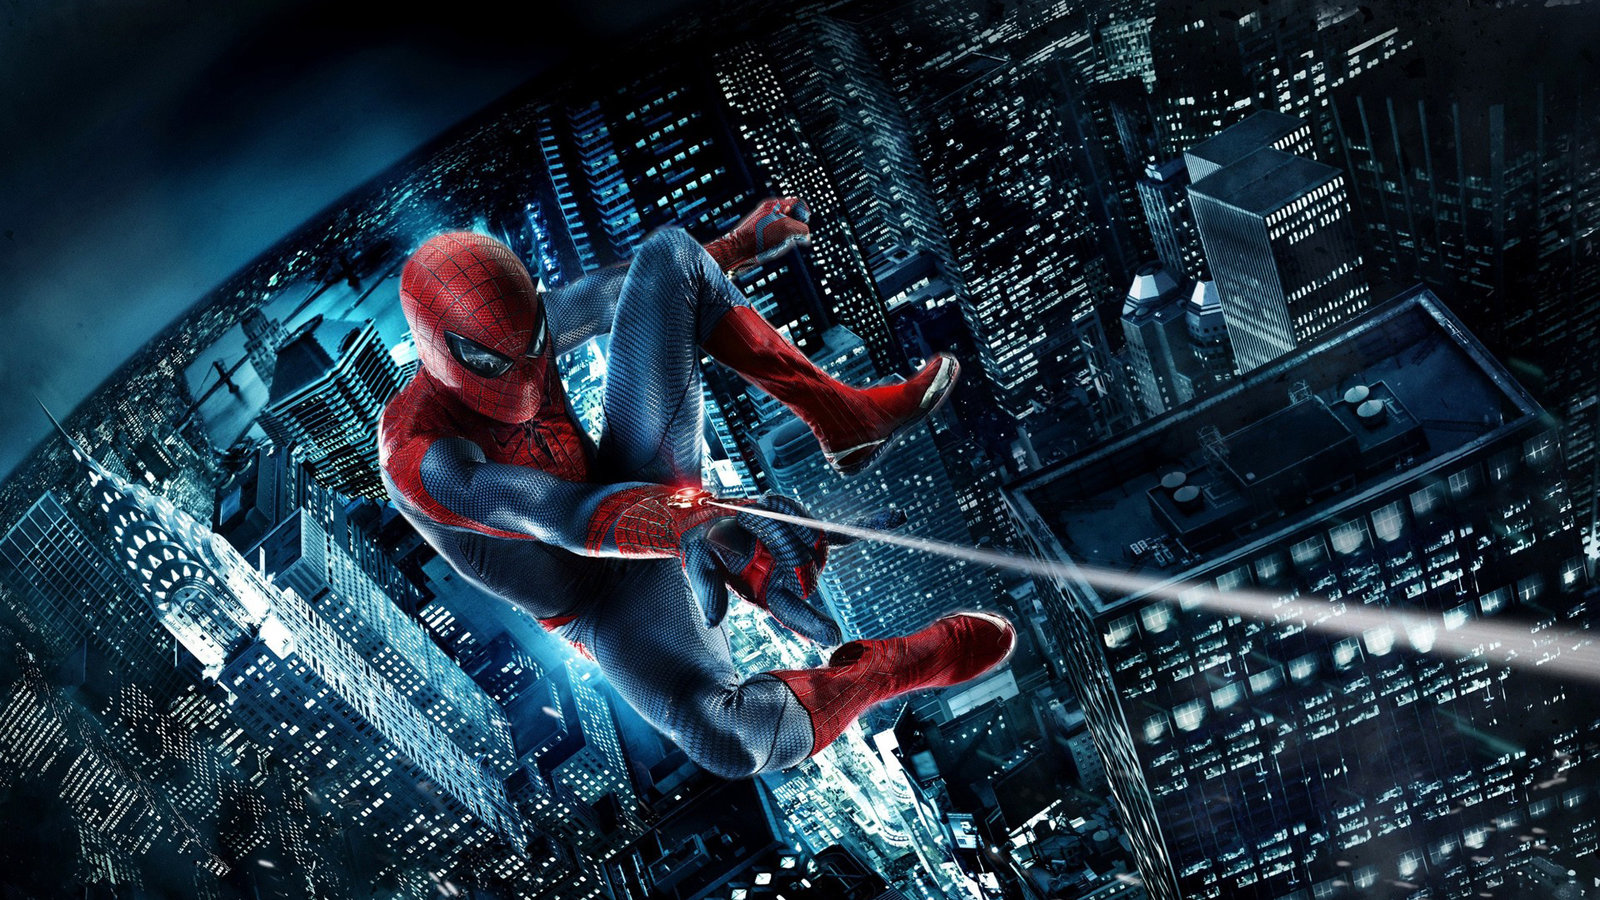 Spider-Man-Image-1.jpg